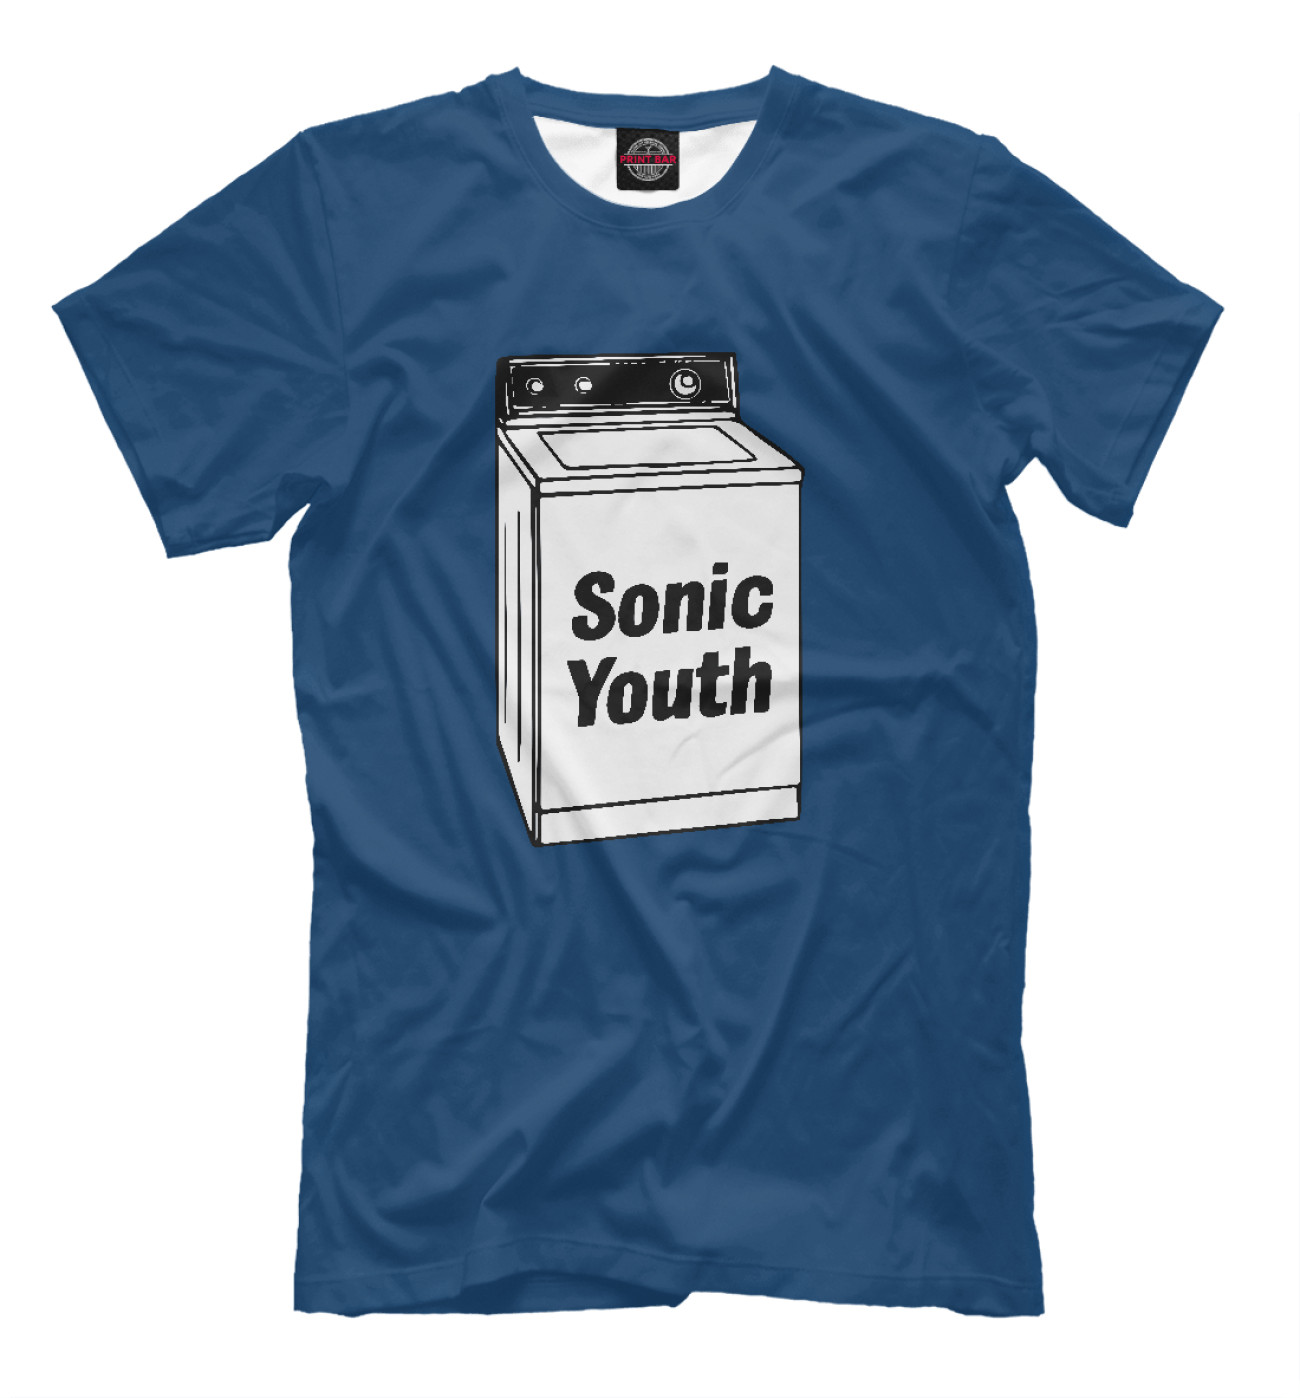 Мужская Футболка Sonic Youth, артикул: MZK-992604-fut-2